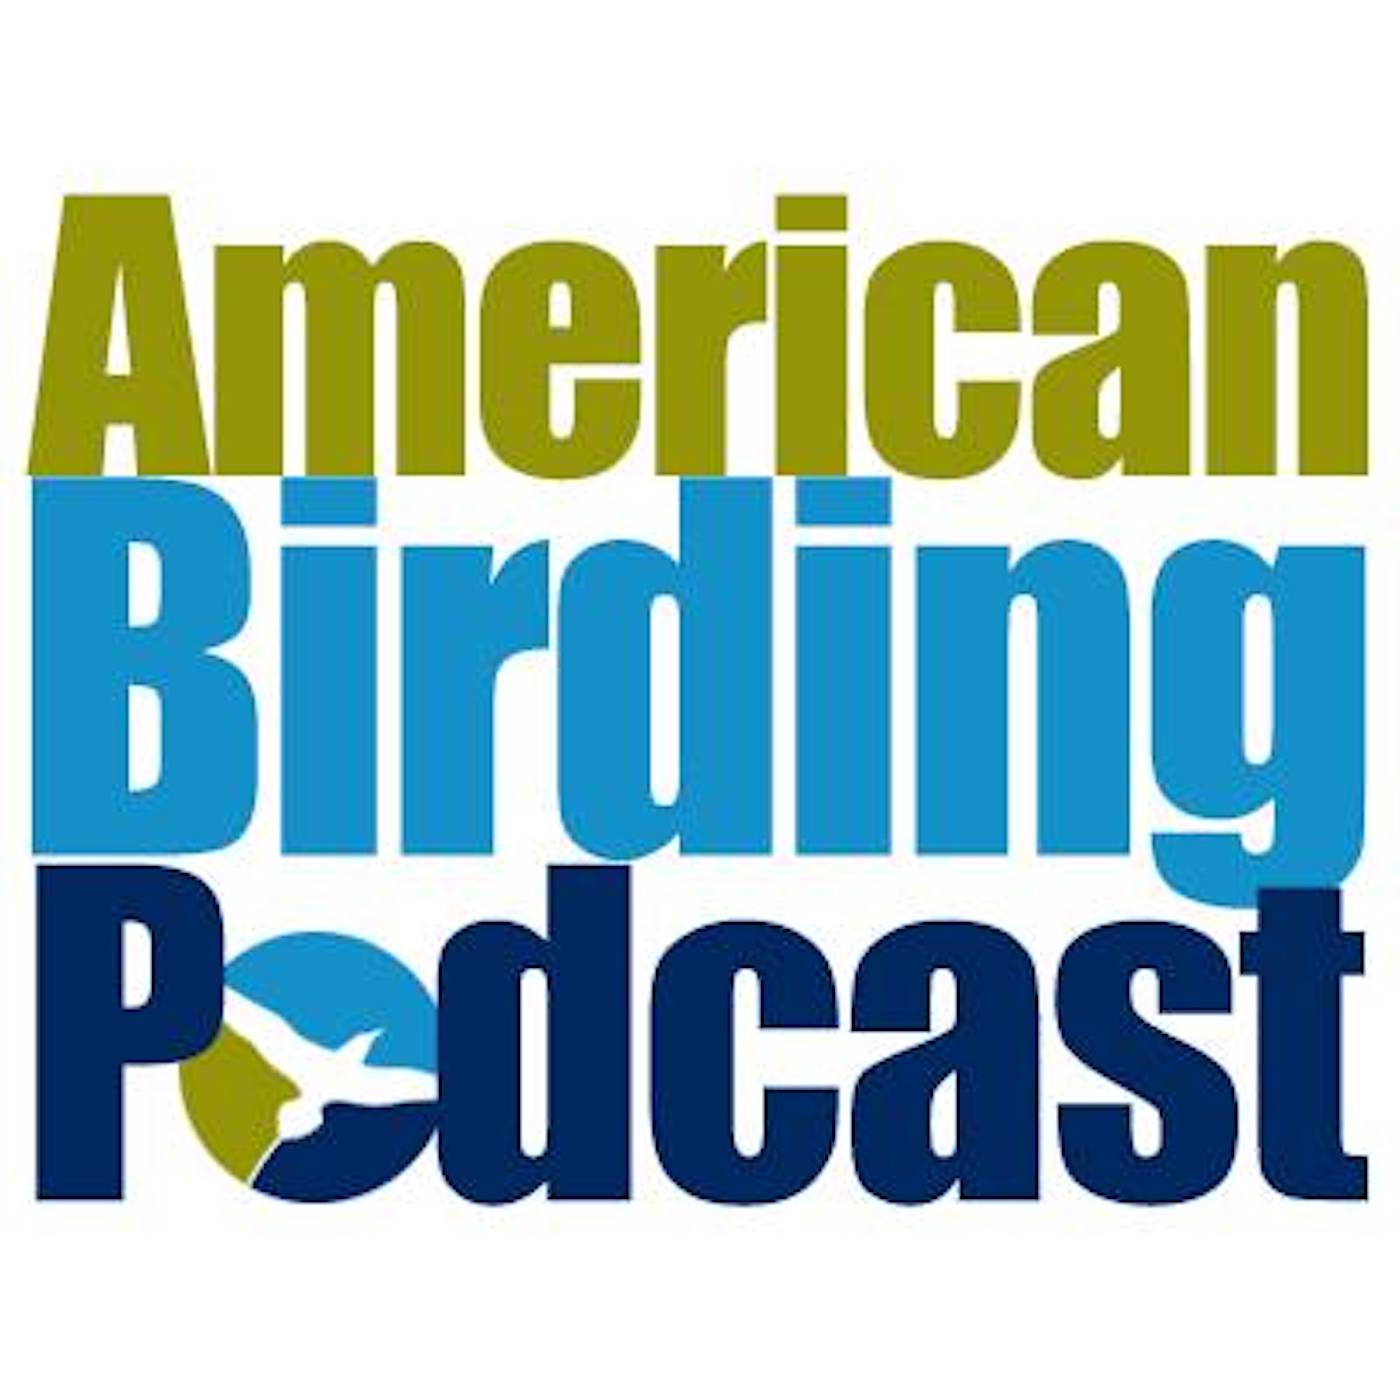 链接到ABA美国观鸟播客. 